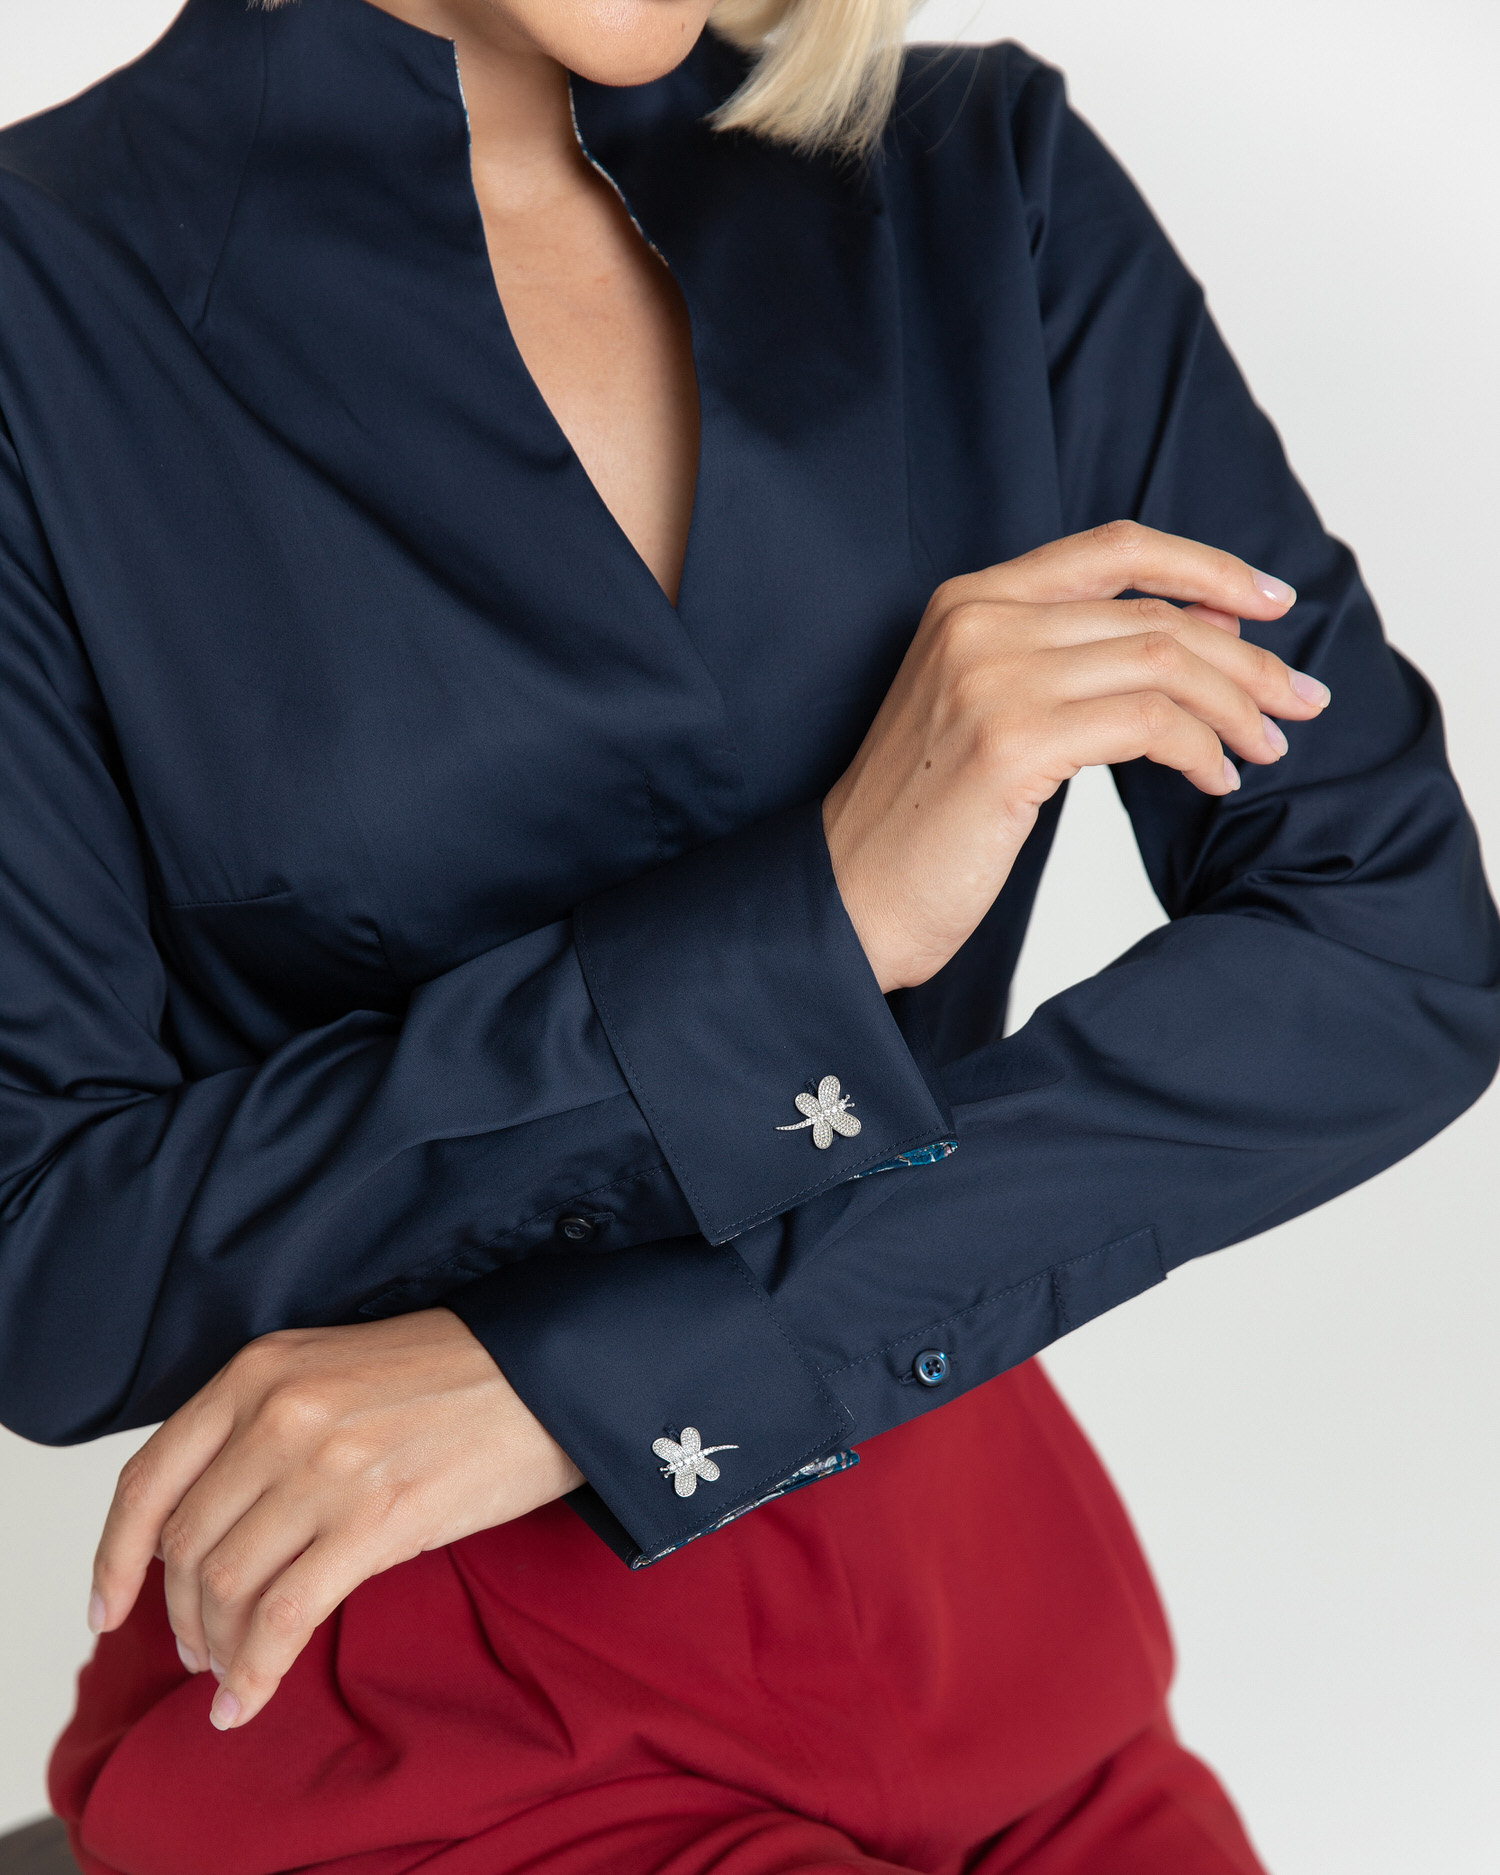 Женская рубашка воротник стойка тёмно-синяя под запонки с отделкой пейсли  - 8346 от byME 